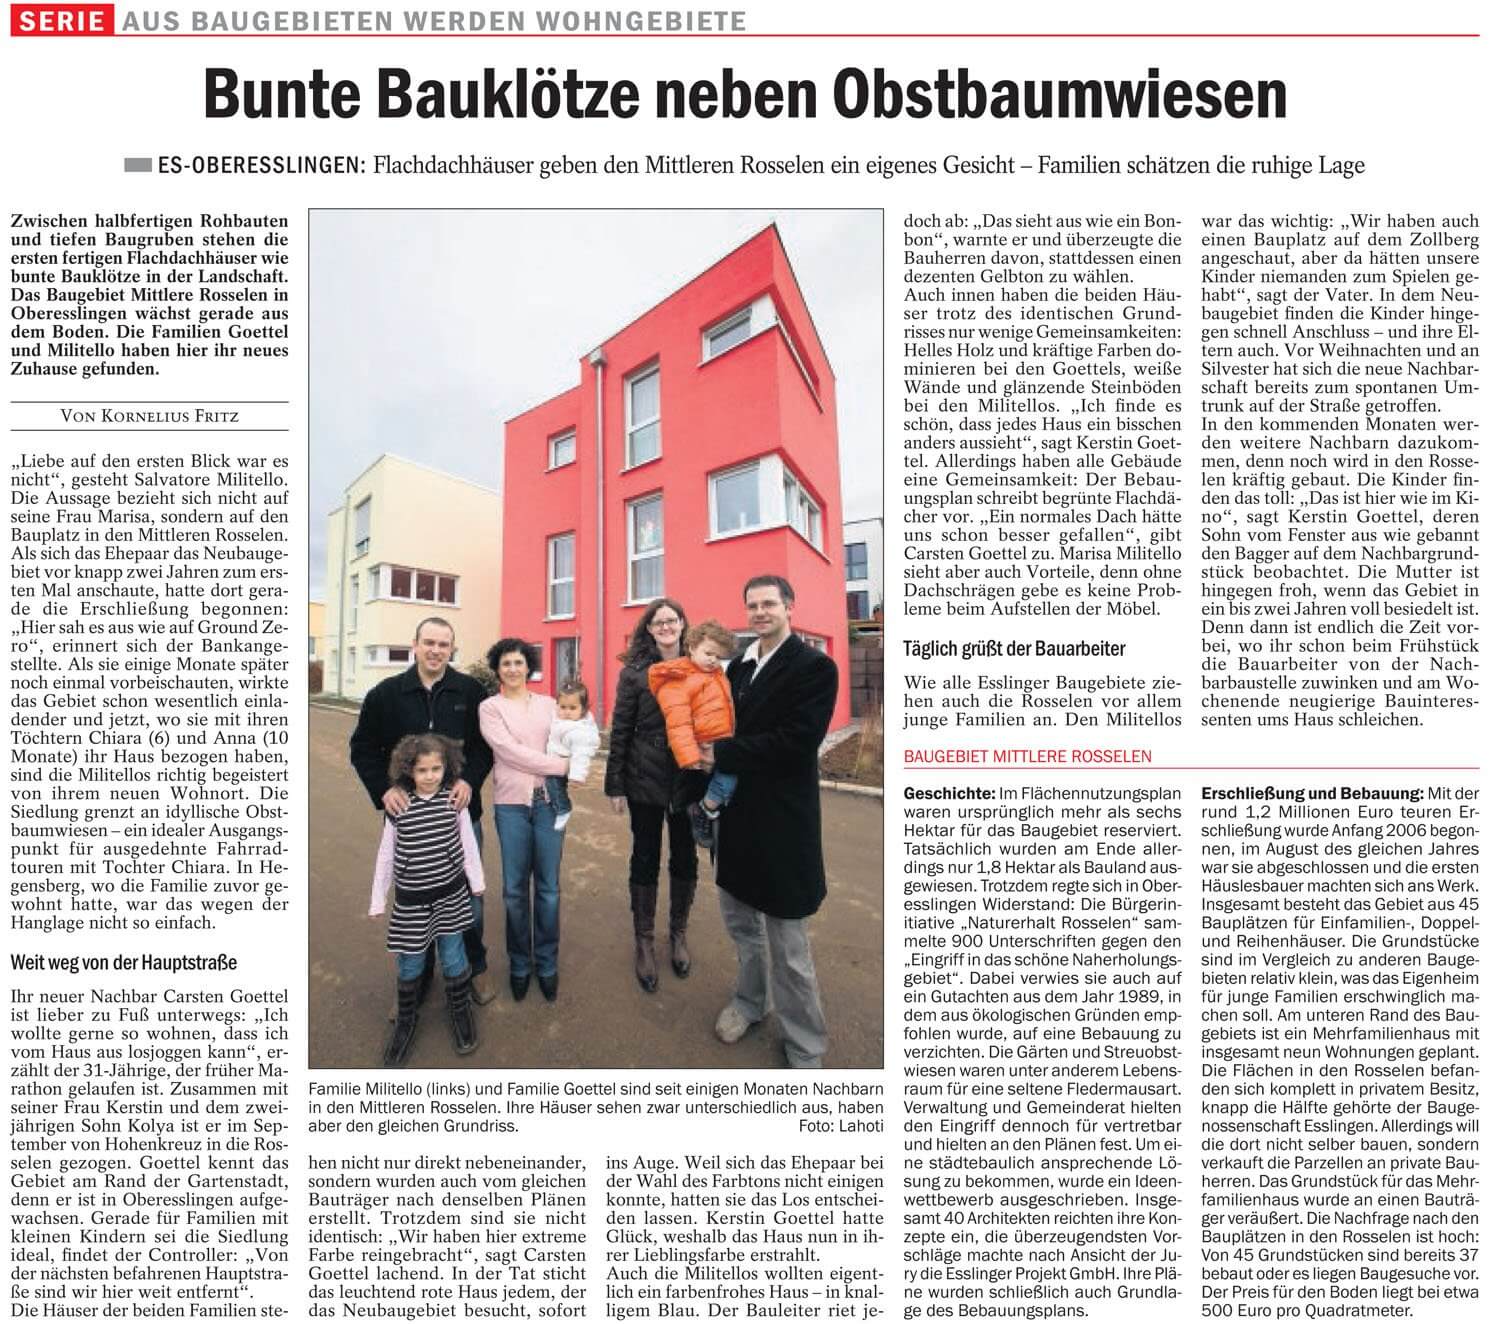 Pressebericht der Esslinger Zeitung über gut Immobilien